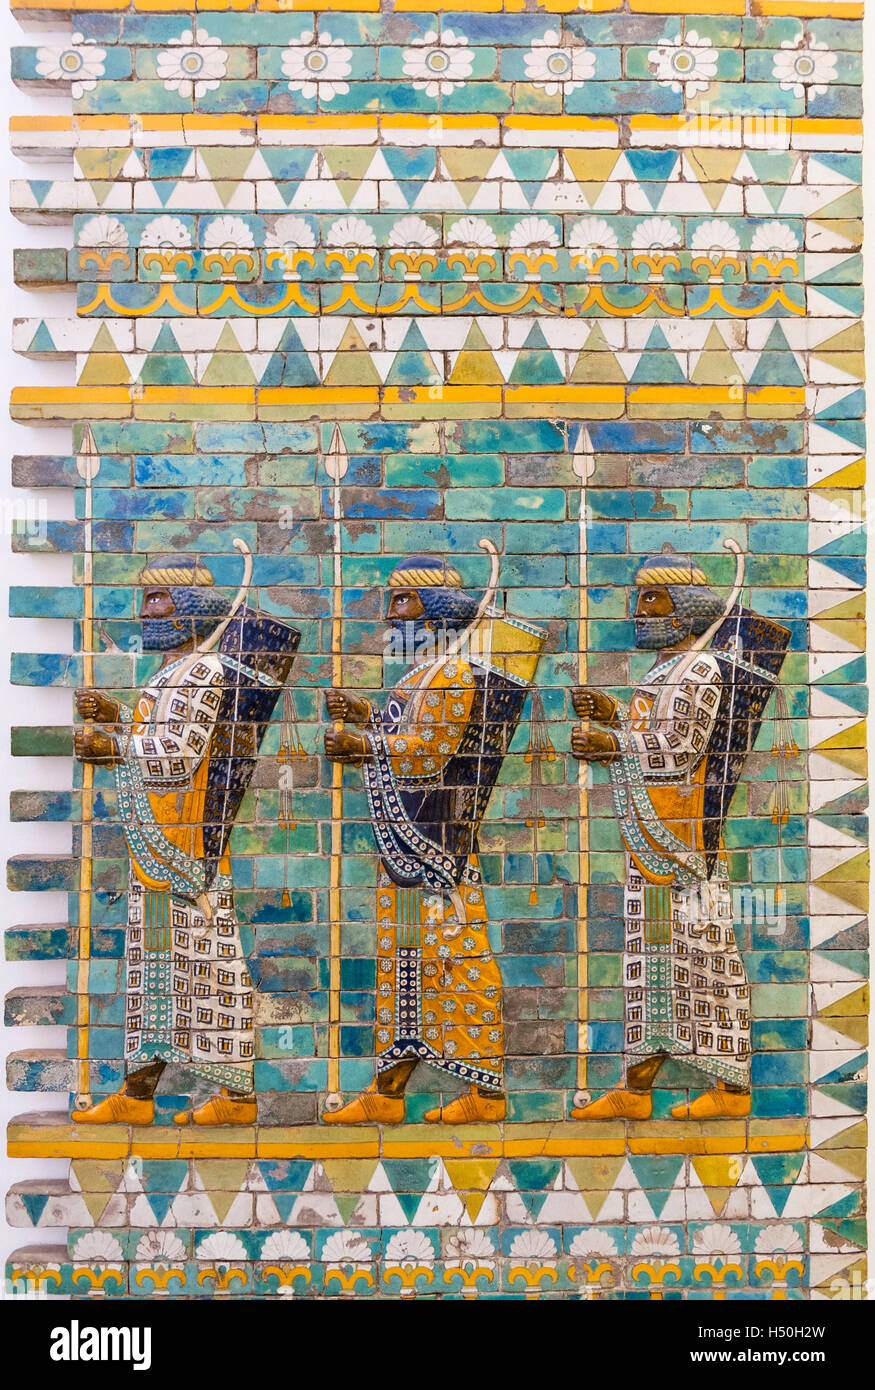 L'île des Musées, Musée de Pergame assyrienne ancienne frise en céramique en Allemagne, Berlin, Site du patrimoine mondial de l'UNESCO Banque D'Images